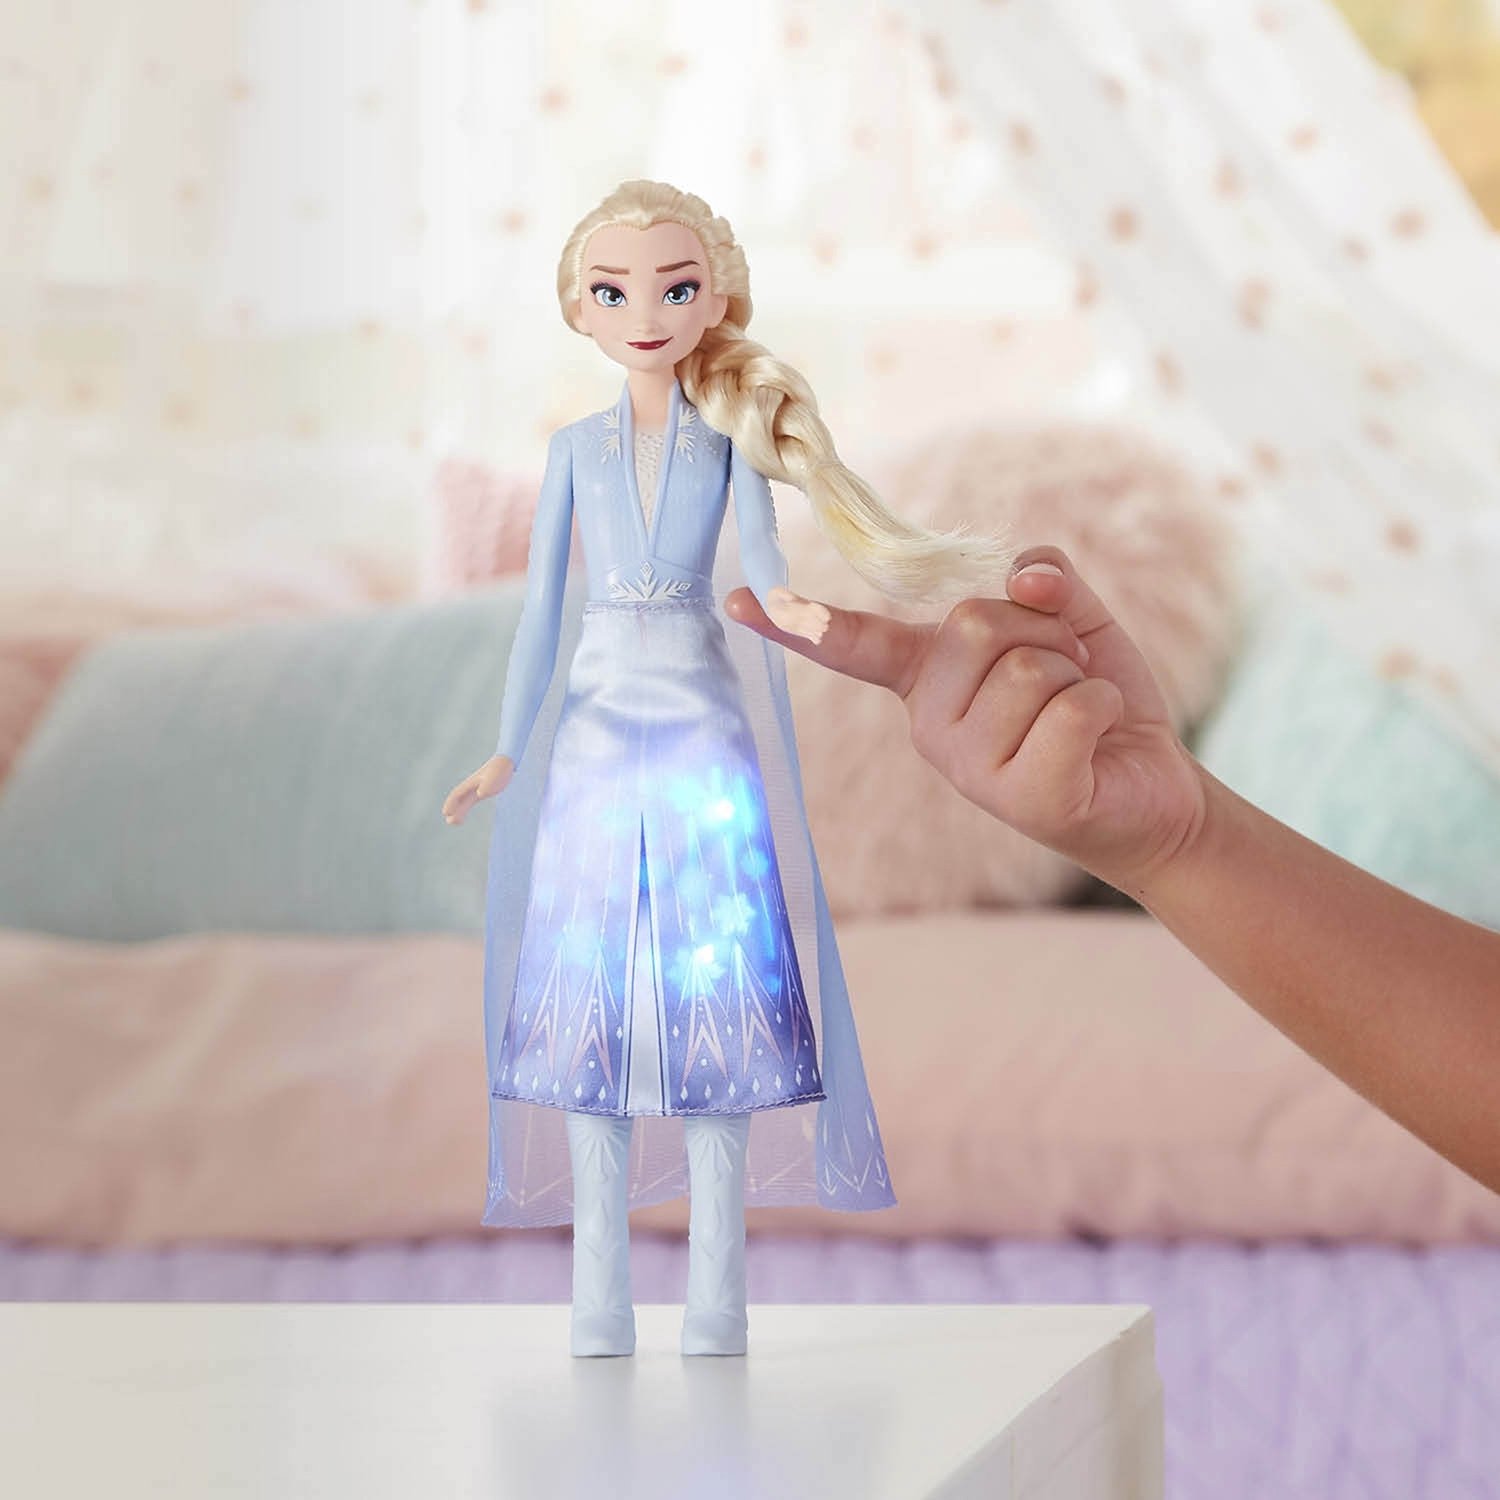 Кукла Hasbro Disney Princess Холодное сердце 2 Эльза в сверкающем платье E7000